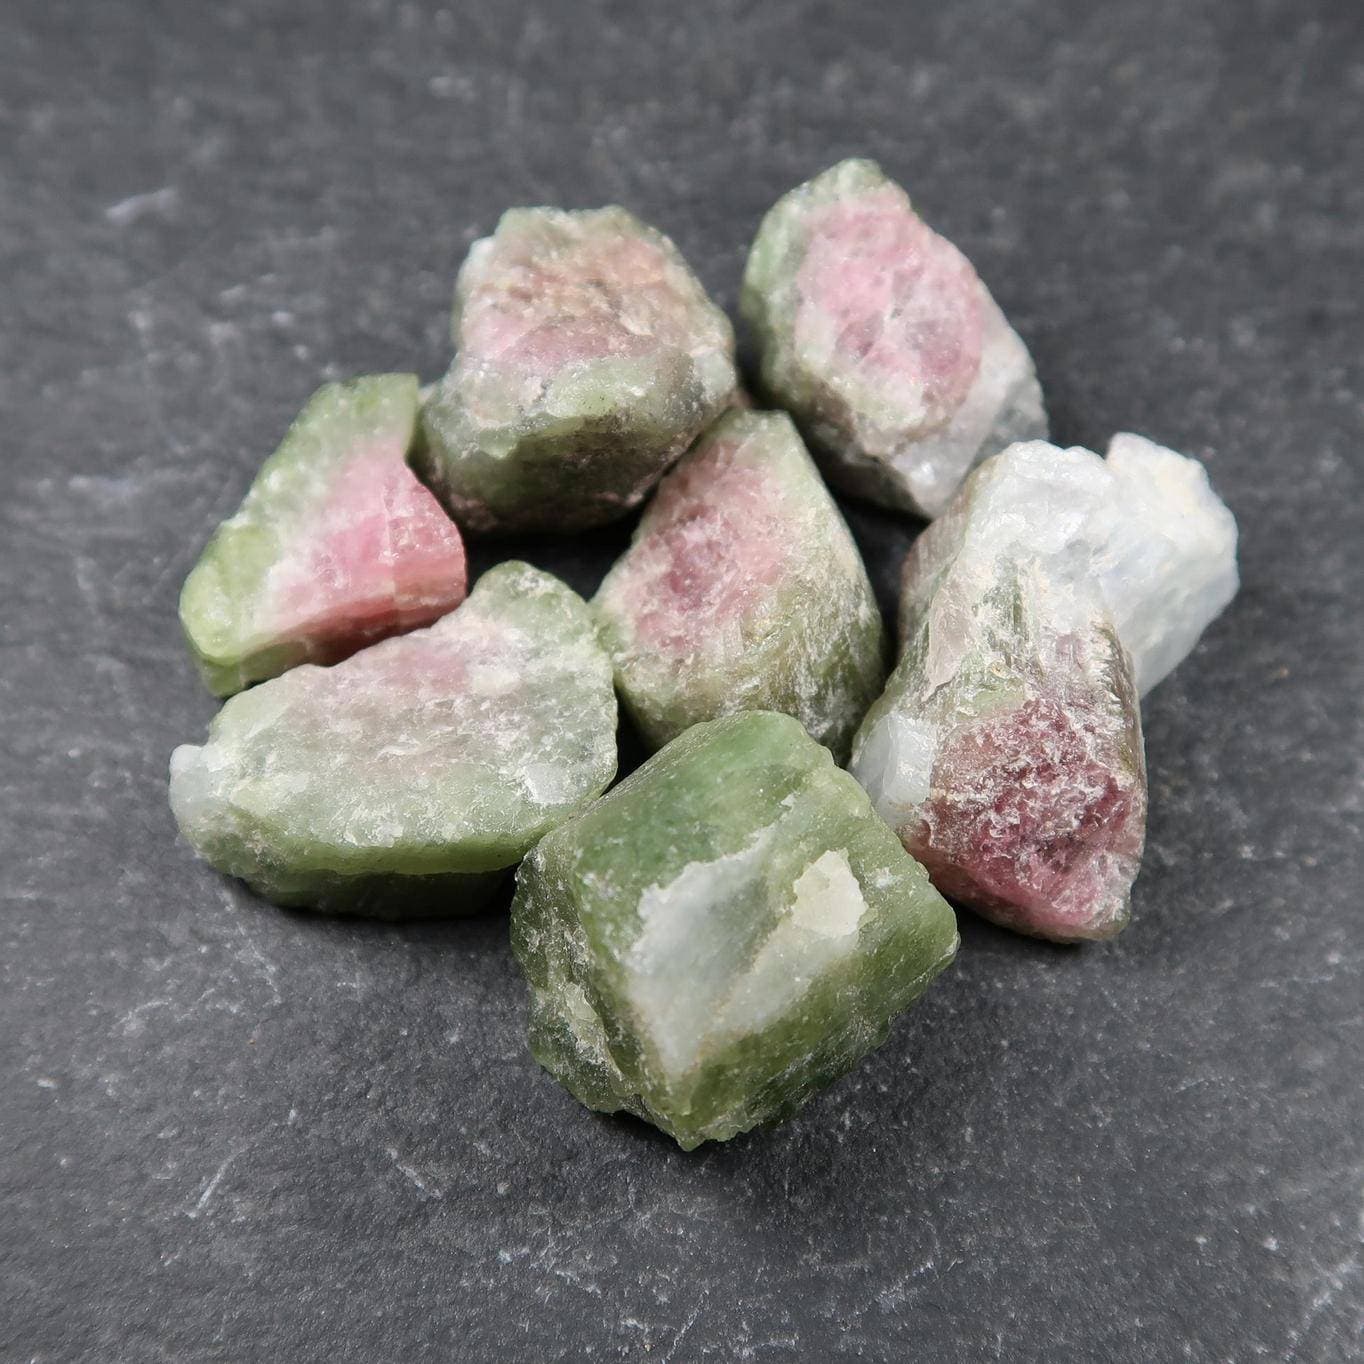 Watermelon Tourmaline Crystals - Buy Tourmaline Online - Minerals UK